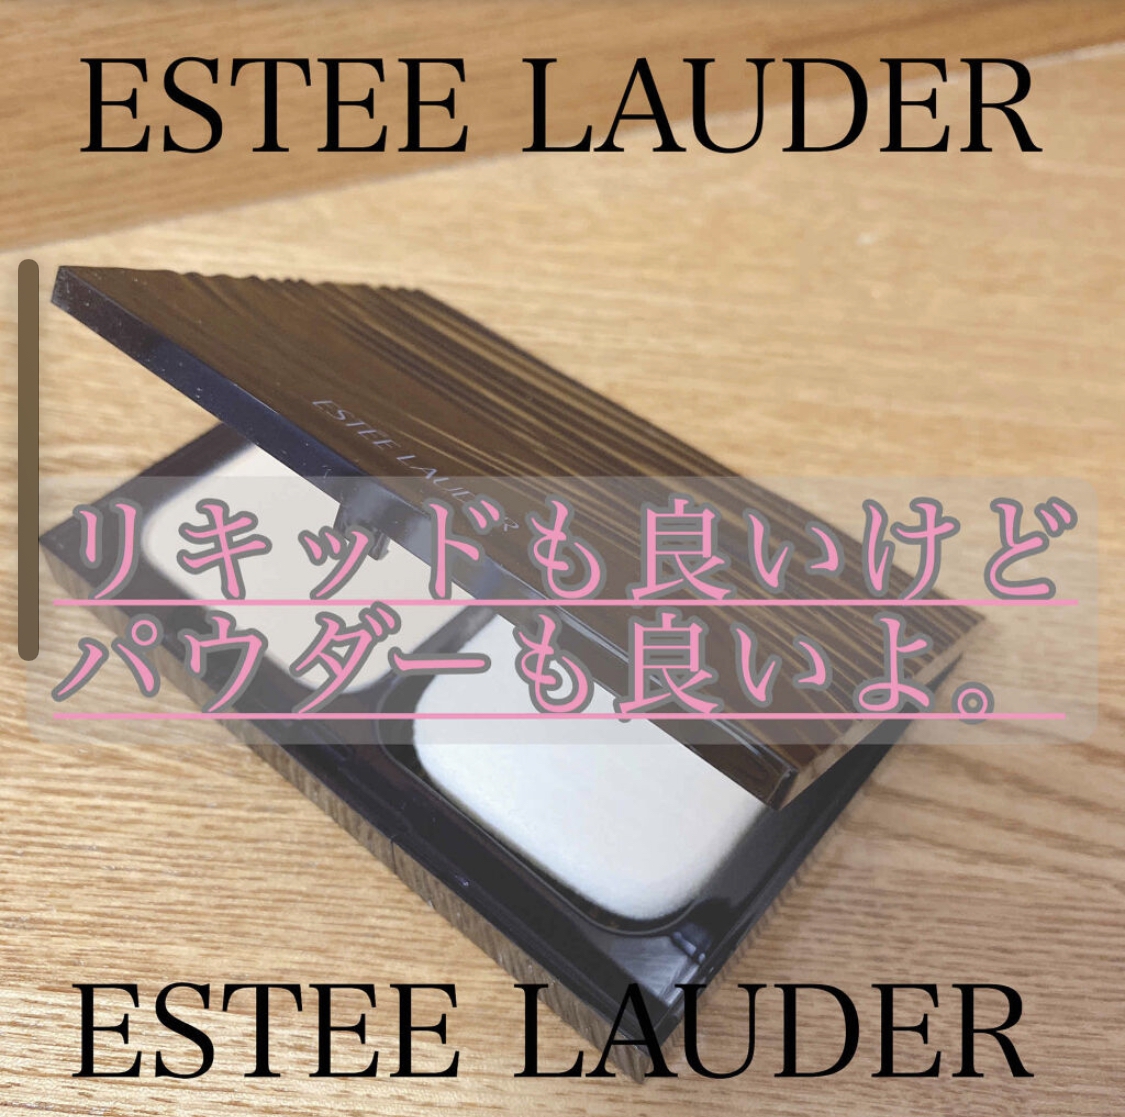 ESTEE LAUDER(エスティローダー) ダブル ウェア モイスチャー ステイ イン プレイス パウダー メークアップ Nを使ったOLちゃんさんのクチコミ画像1